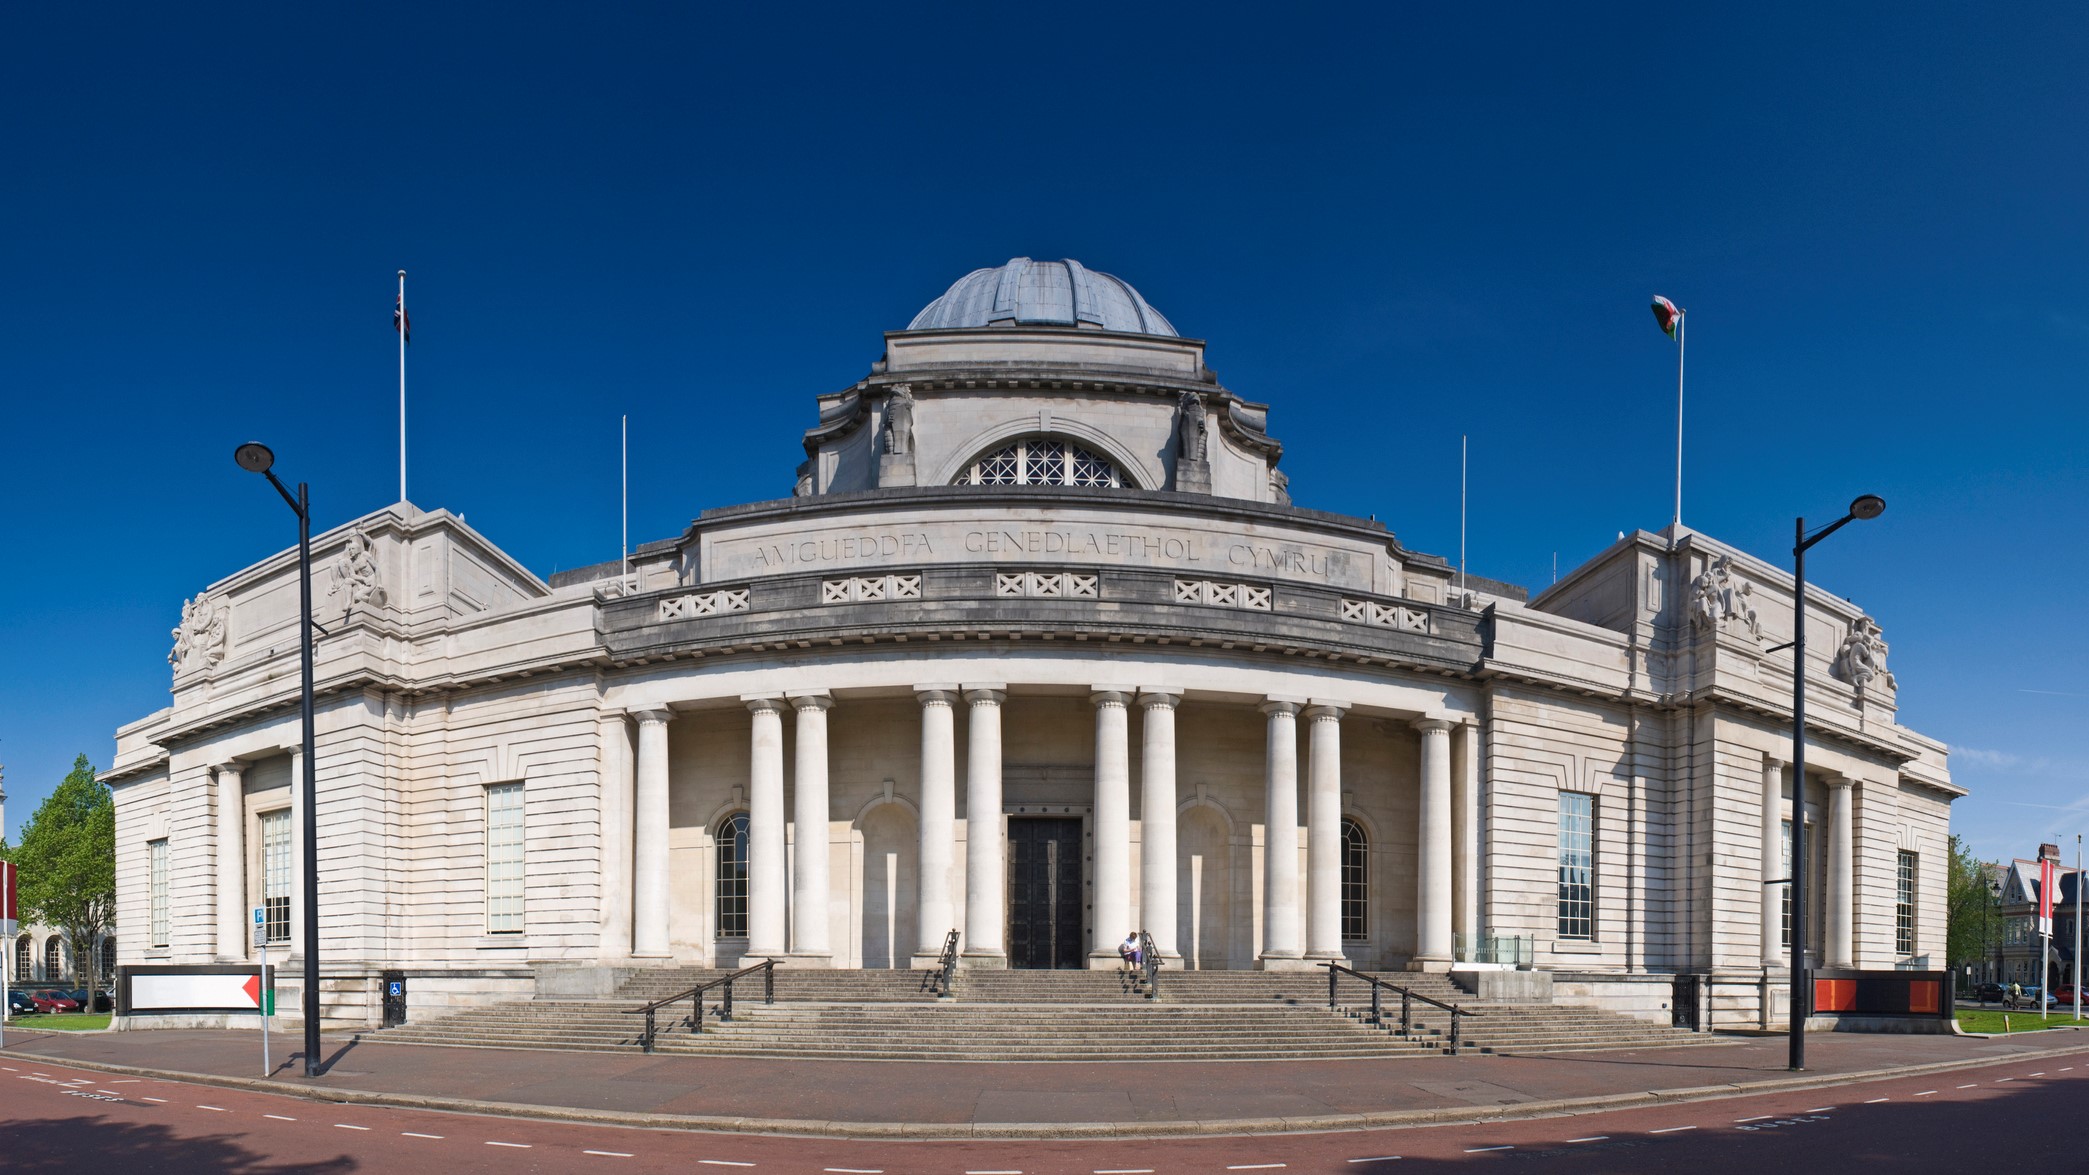 El Museo Nacional de Cardiff alberga impresionantes colecciones de arte, geología e historia natural.